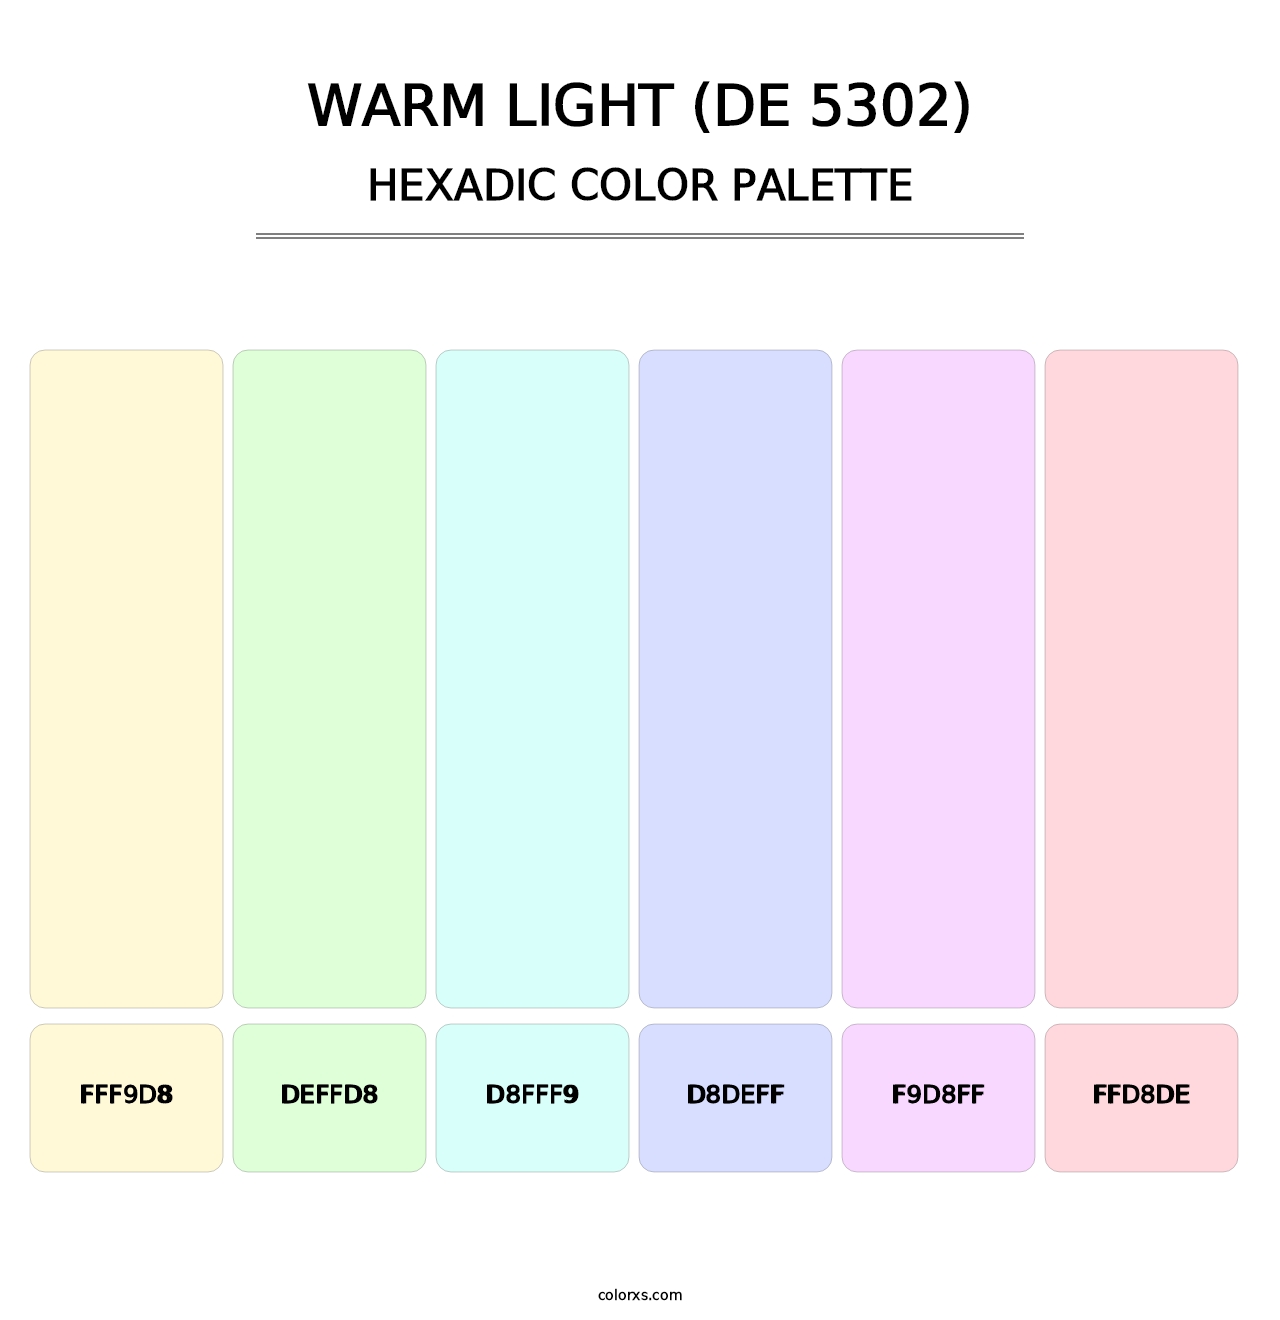 Warm Light (DE 5302) - Hexadic Color Palette